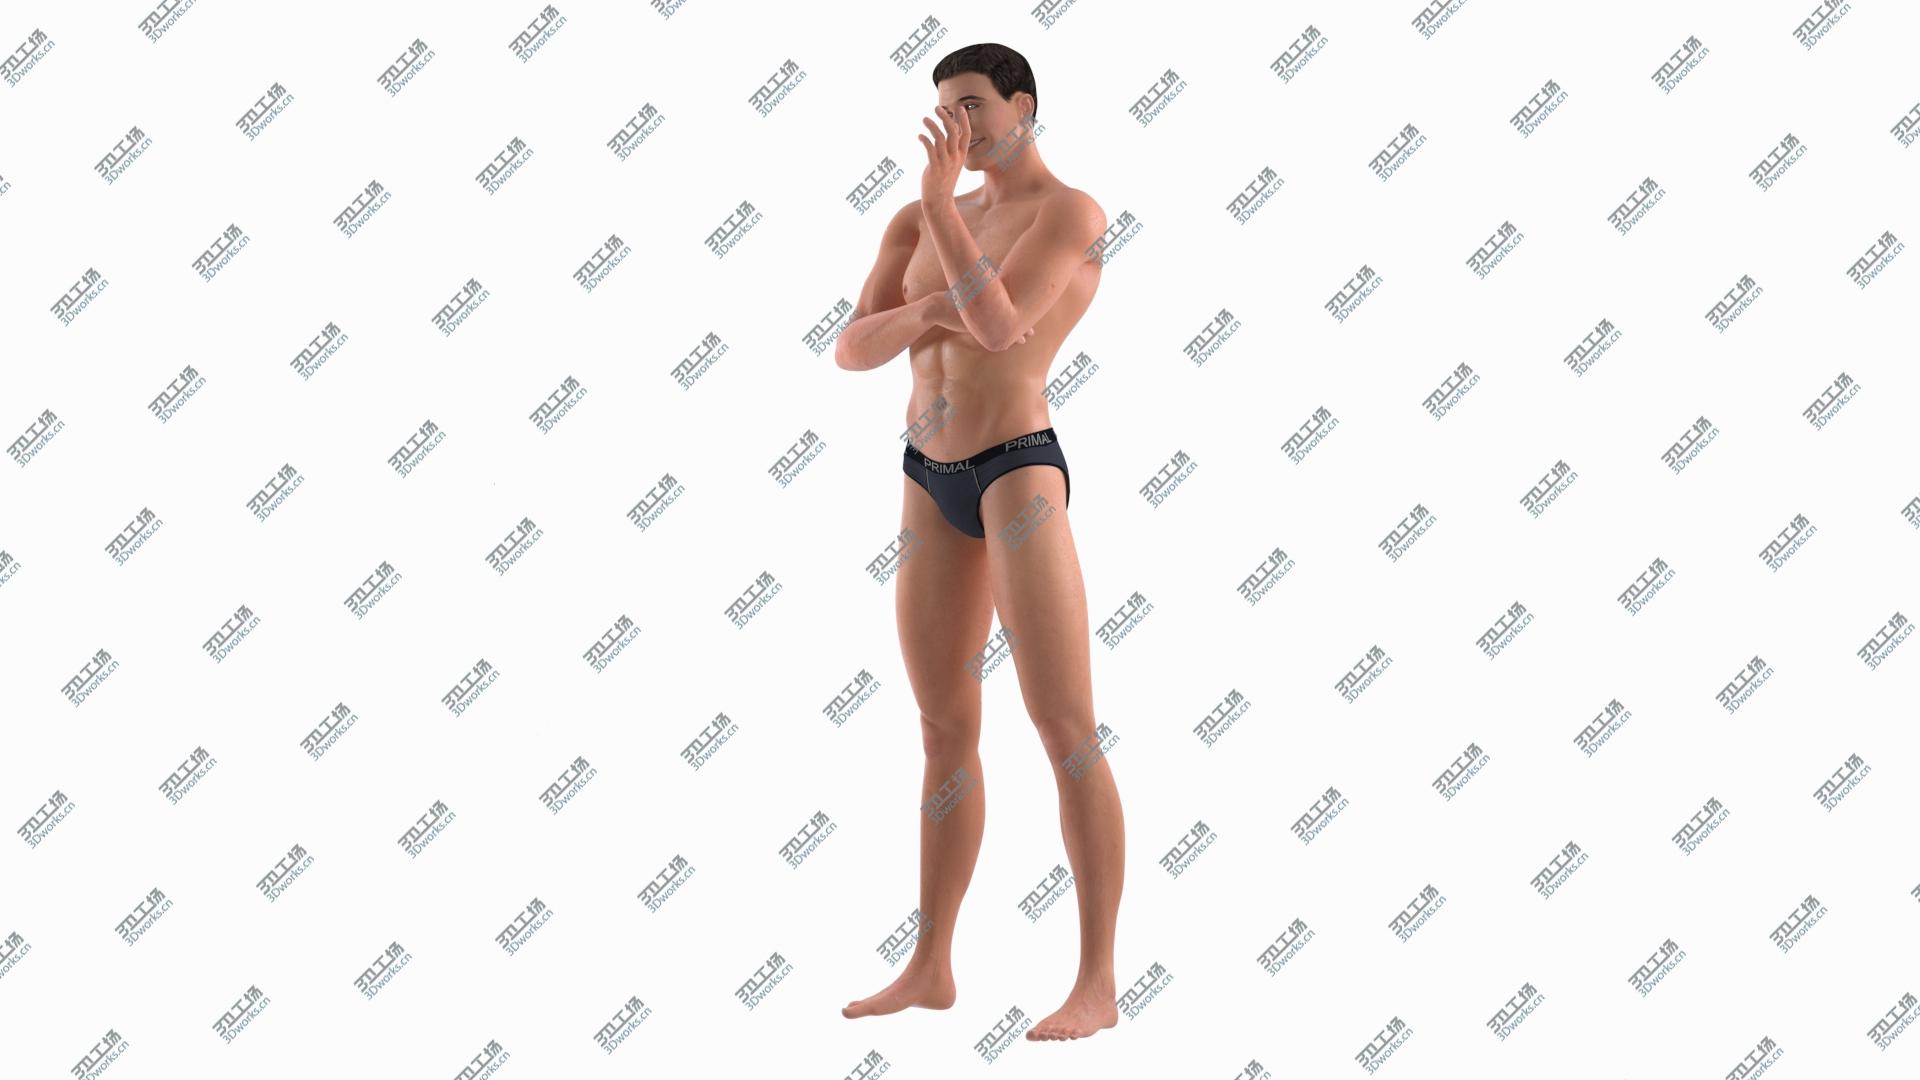 images/goods_img/202104092/Fitness Man Standing Pose model/3.jpg